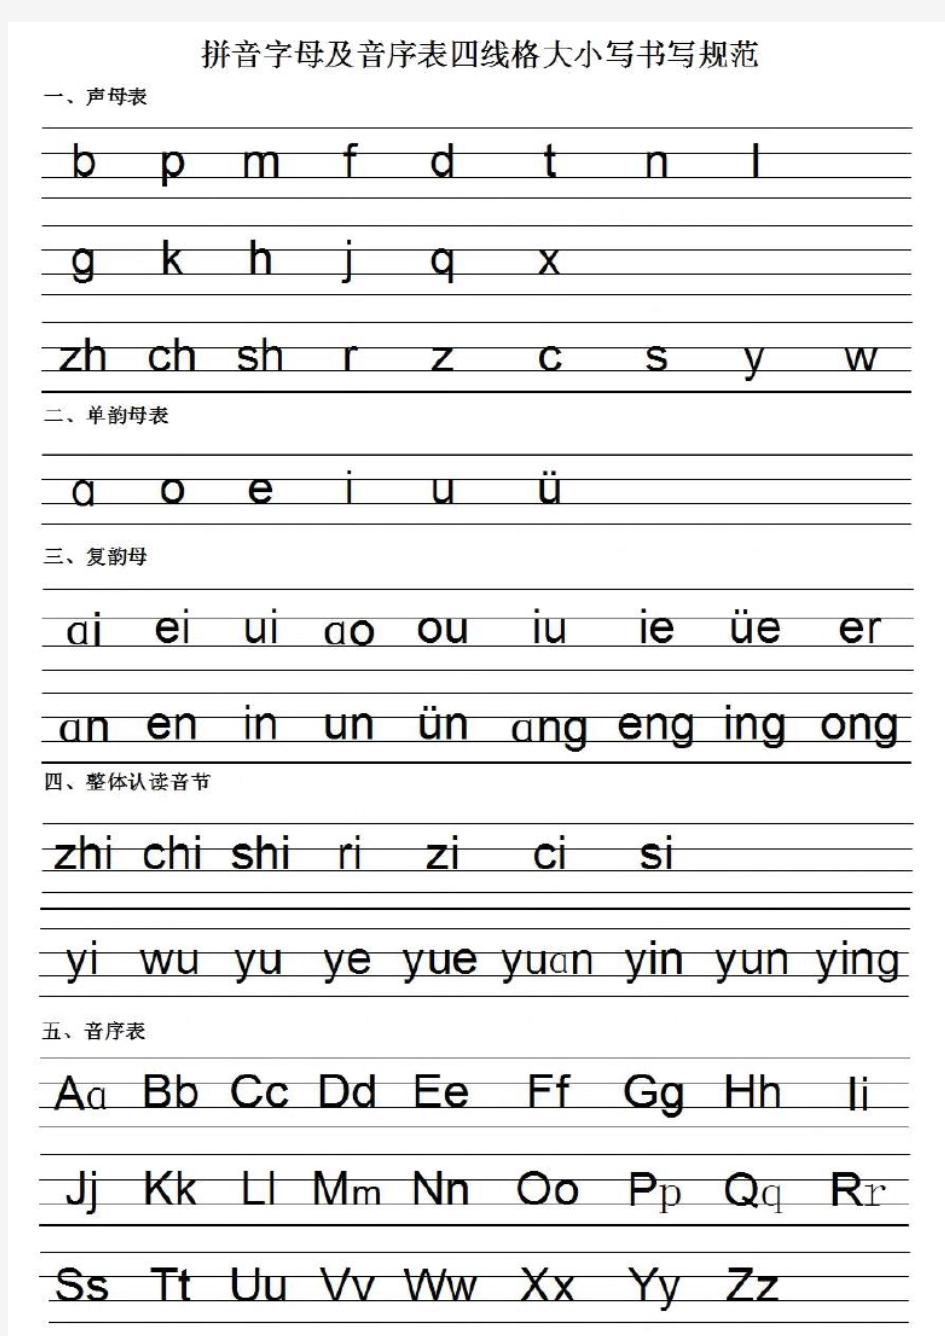 拼音字母及音序表四线格大小写书写规范 打印